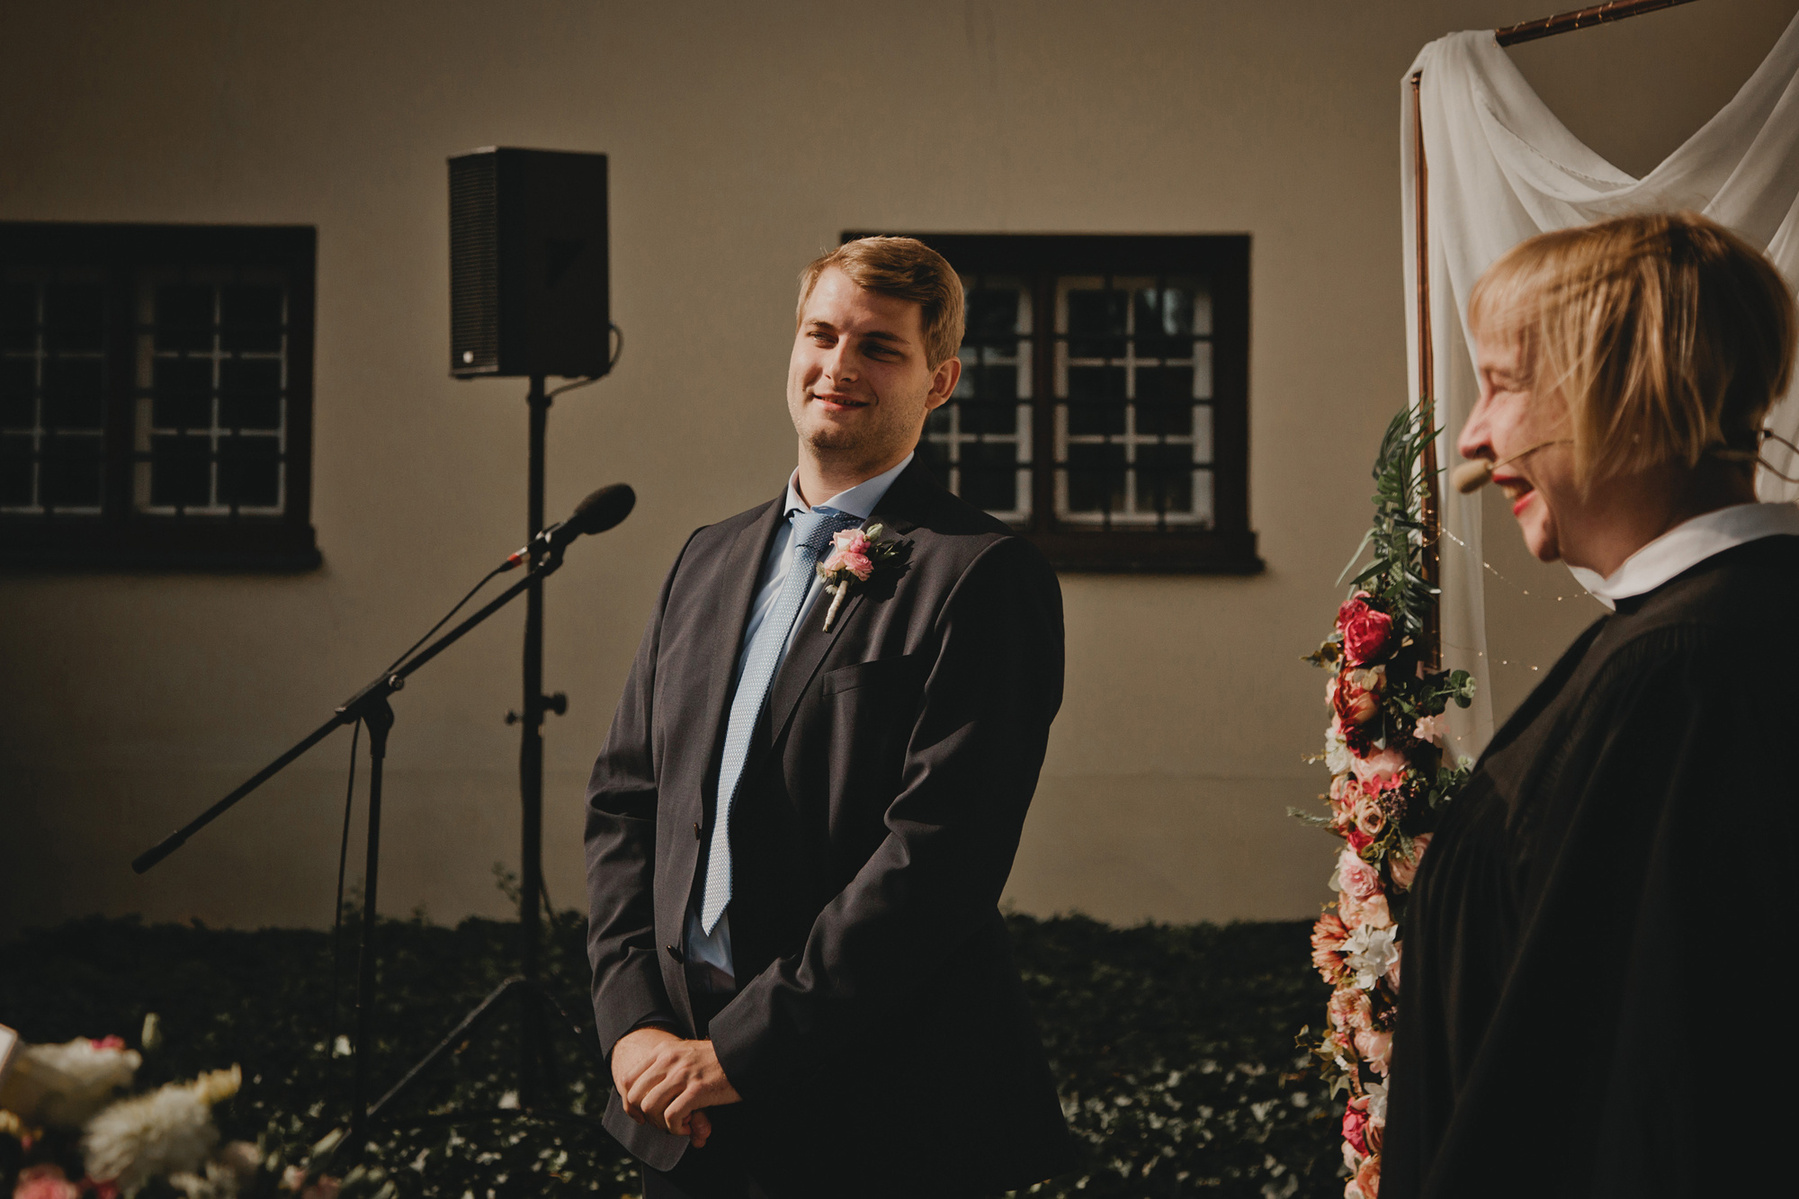 Der Bräutigam im blauen Hochzeitsanzug sieht seine Braut beim First Look zum ersten Mal am Hochzeitstag.